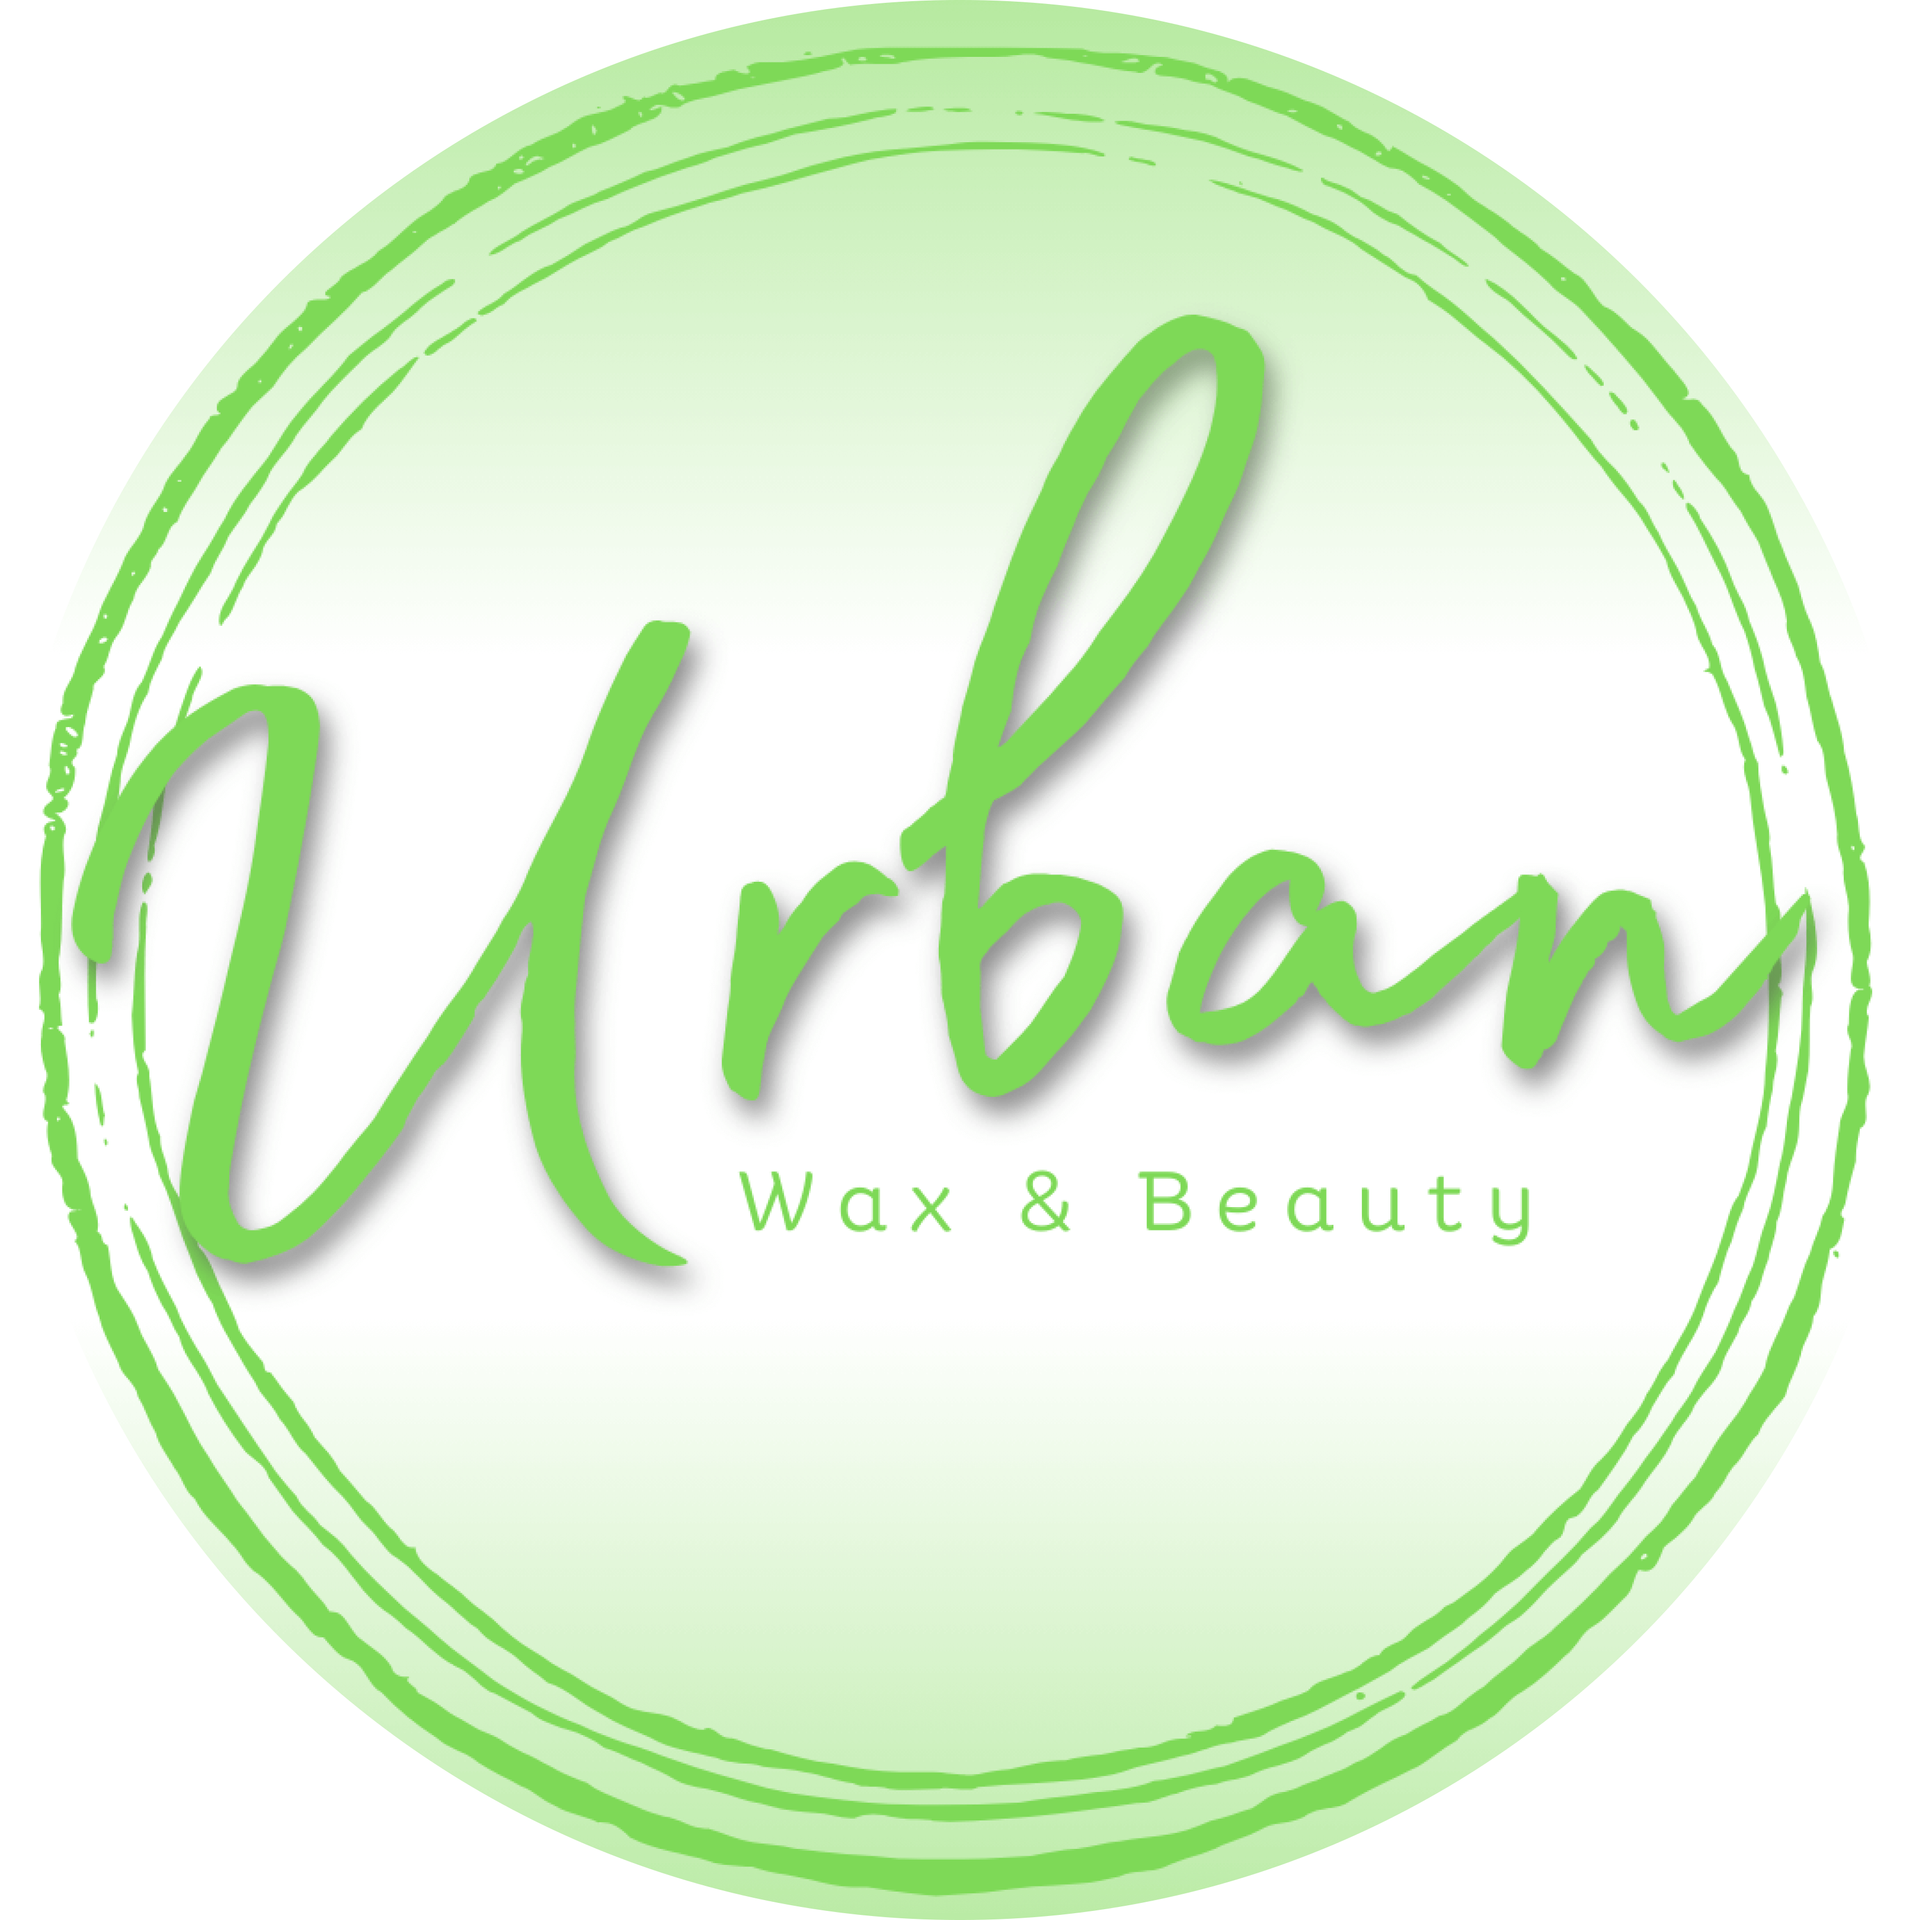 Urban Wax & Beauty